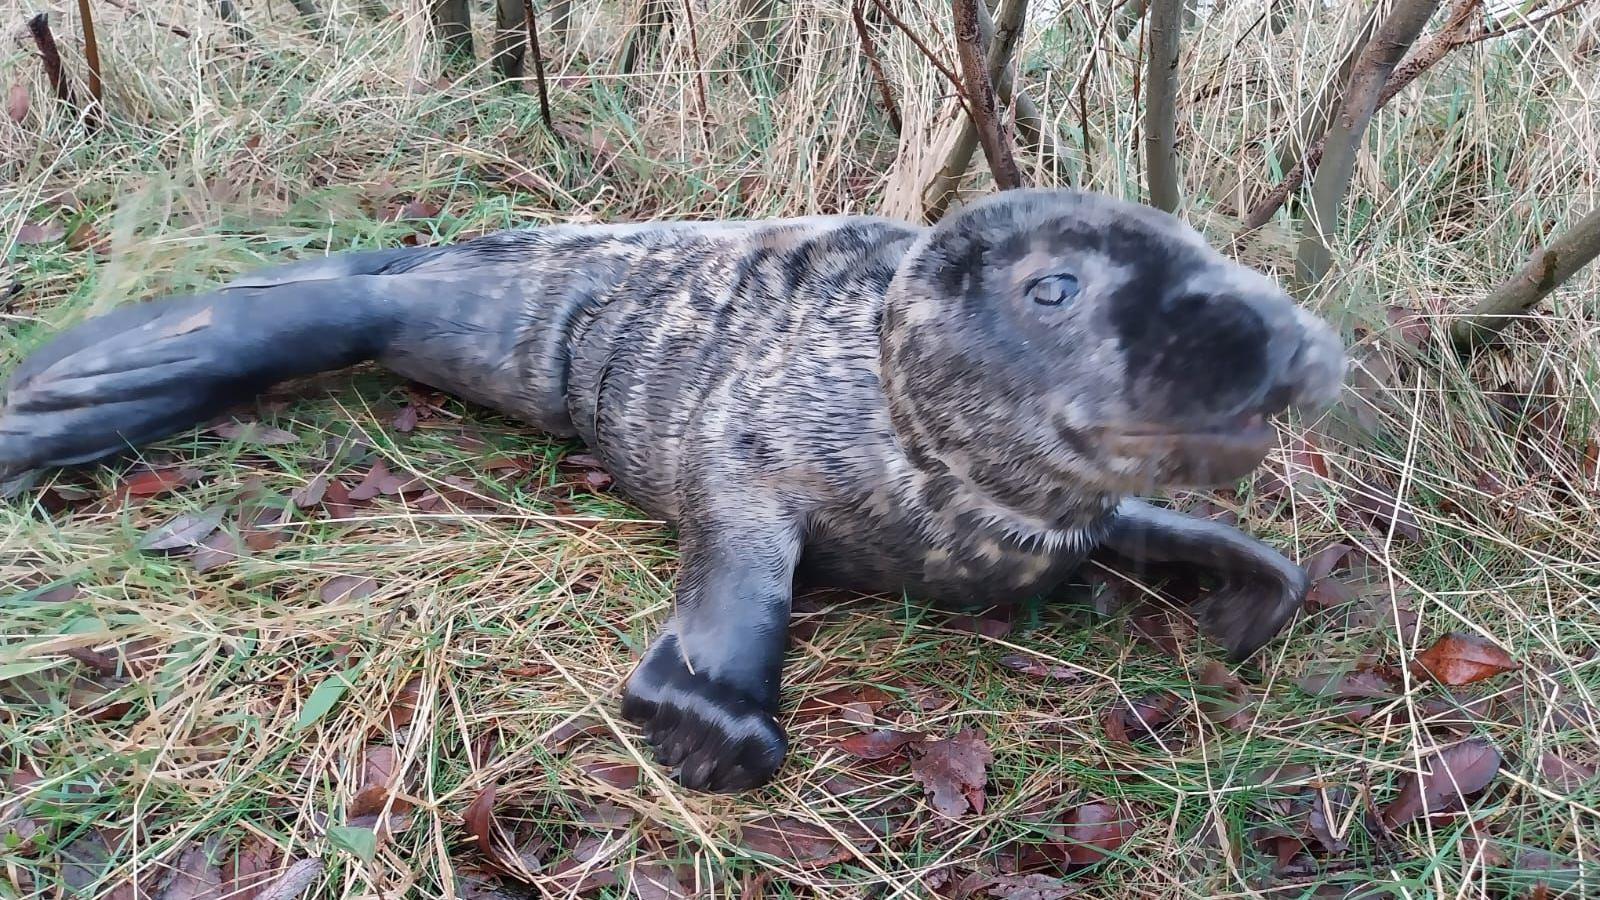 injured seal found under tree put down